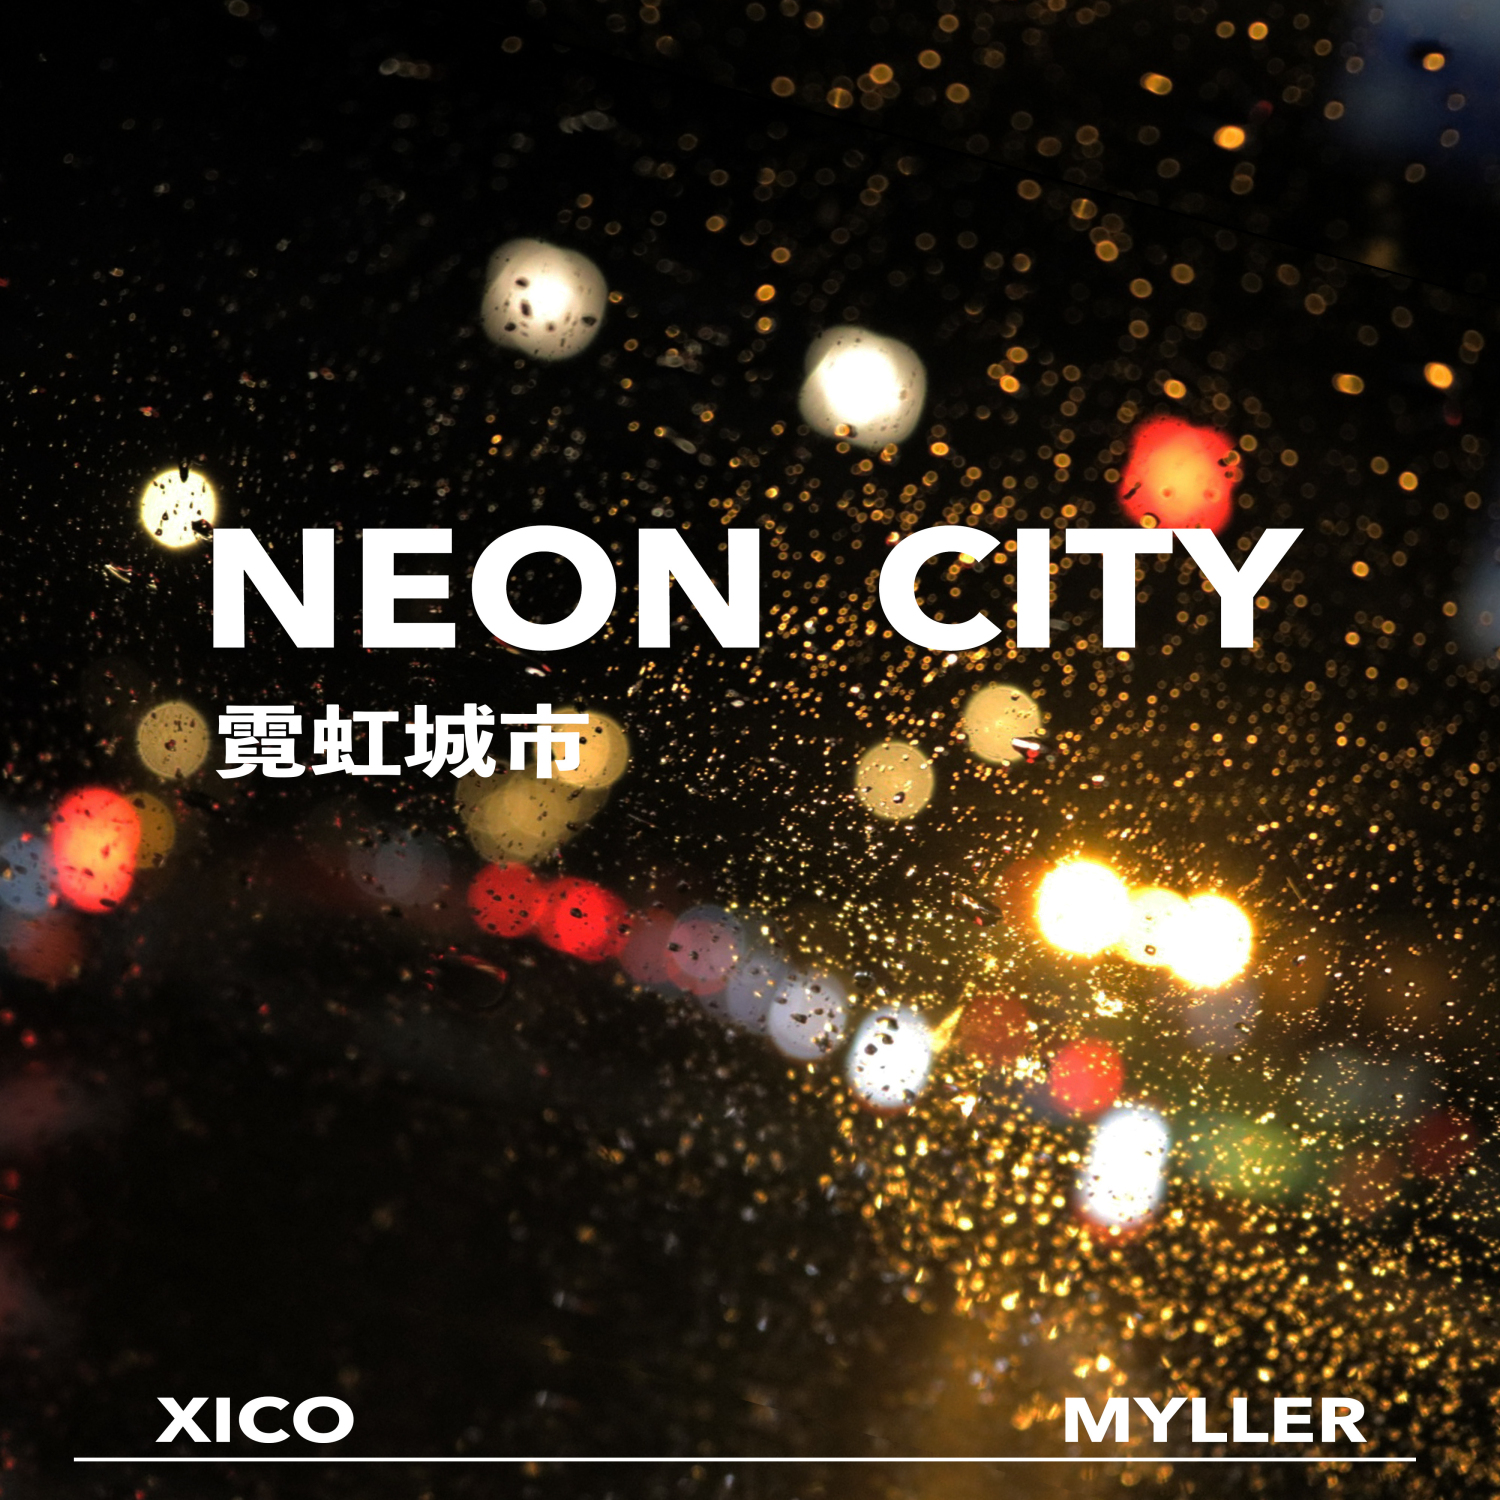 Neon City ni hong cheng shi